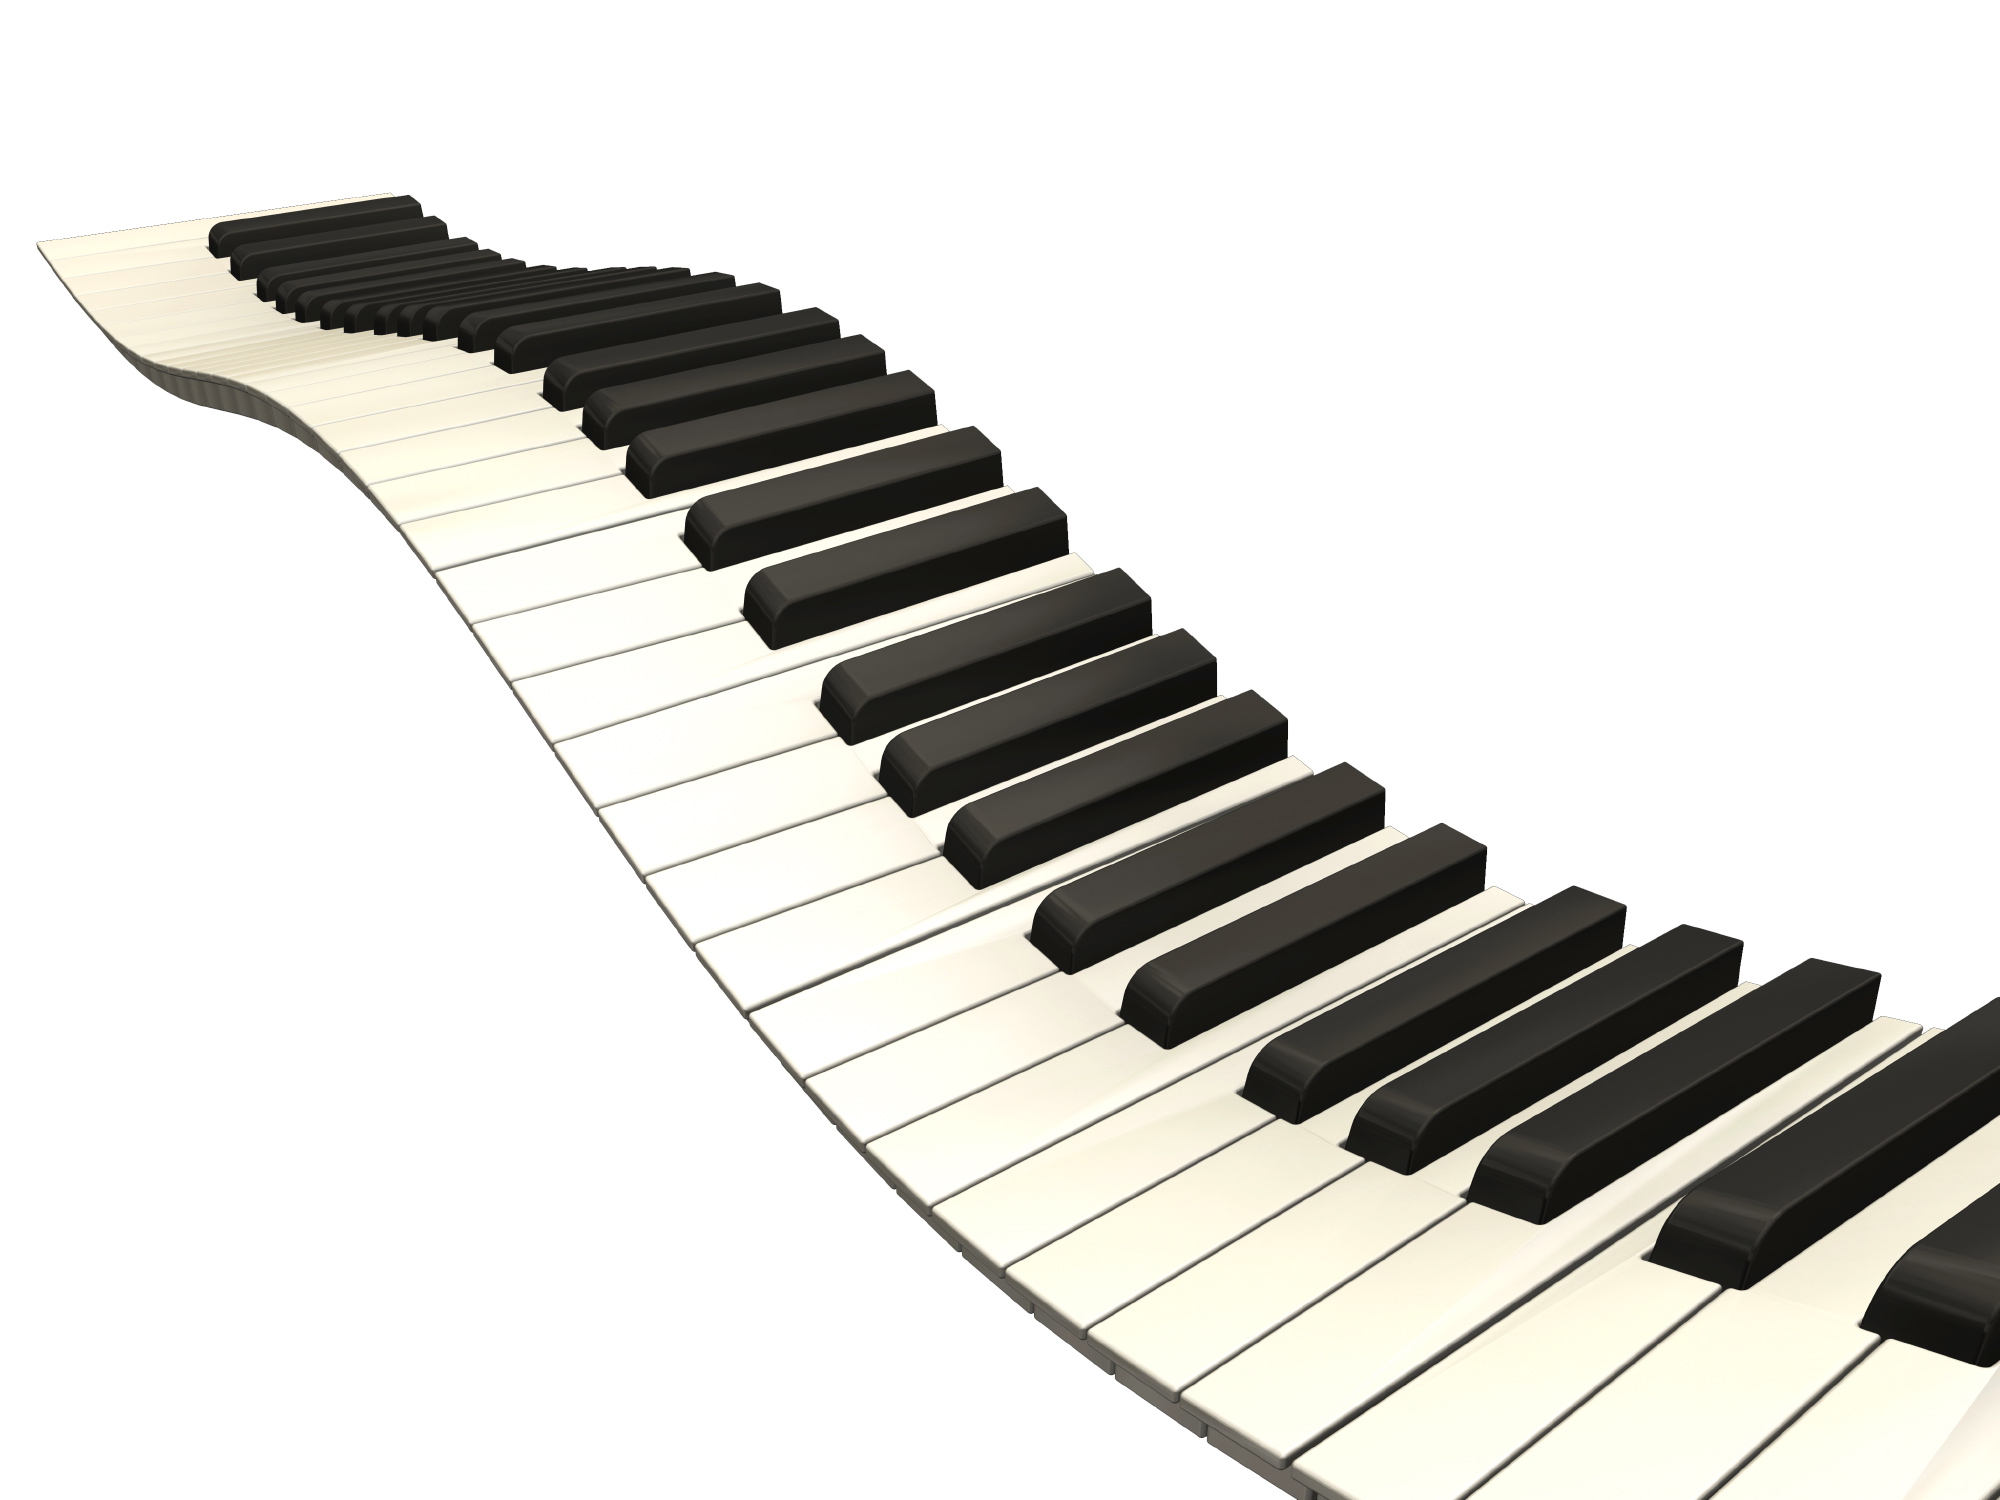 Wavy piano keys clipart